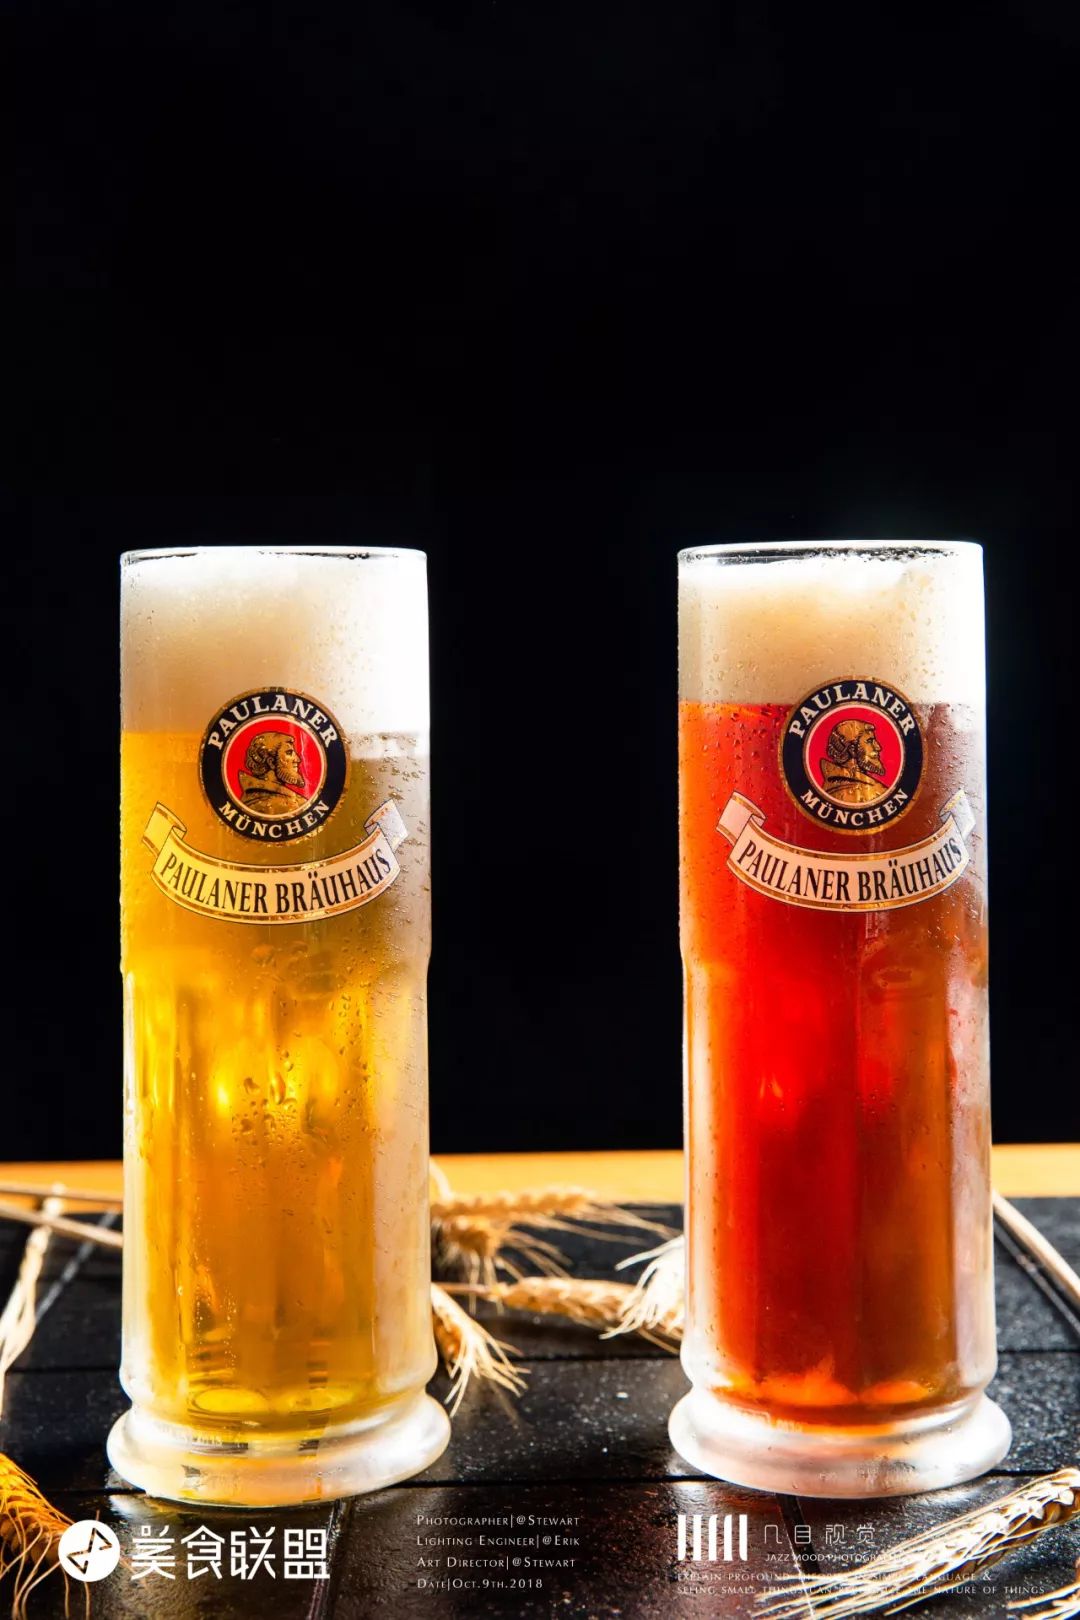 慕尼黑1860狮牌啤酒_慕尼黑啤酒节_慕尼黑啤酒怎么样